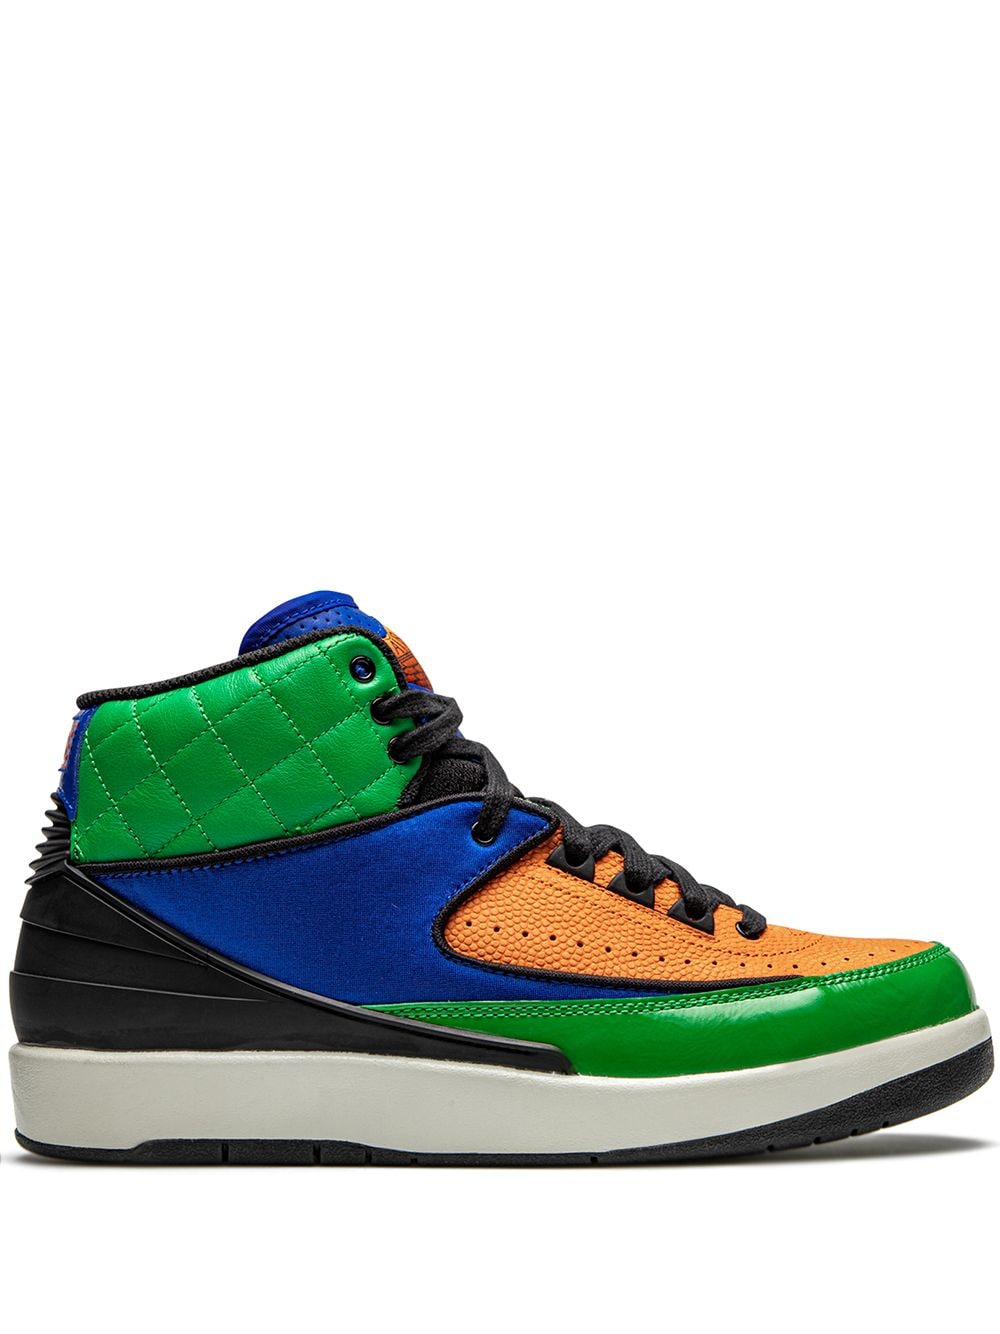 Jordan Air Jordan 2 Retro "Multicolor" sneakers - Orange